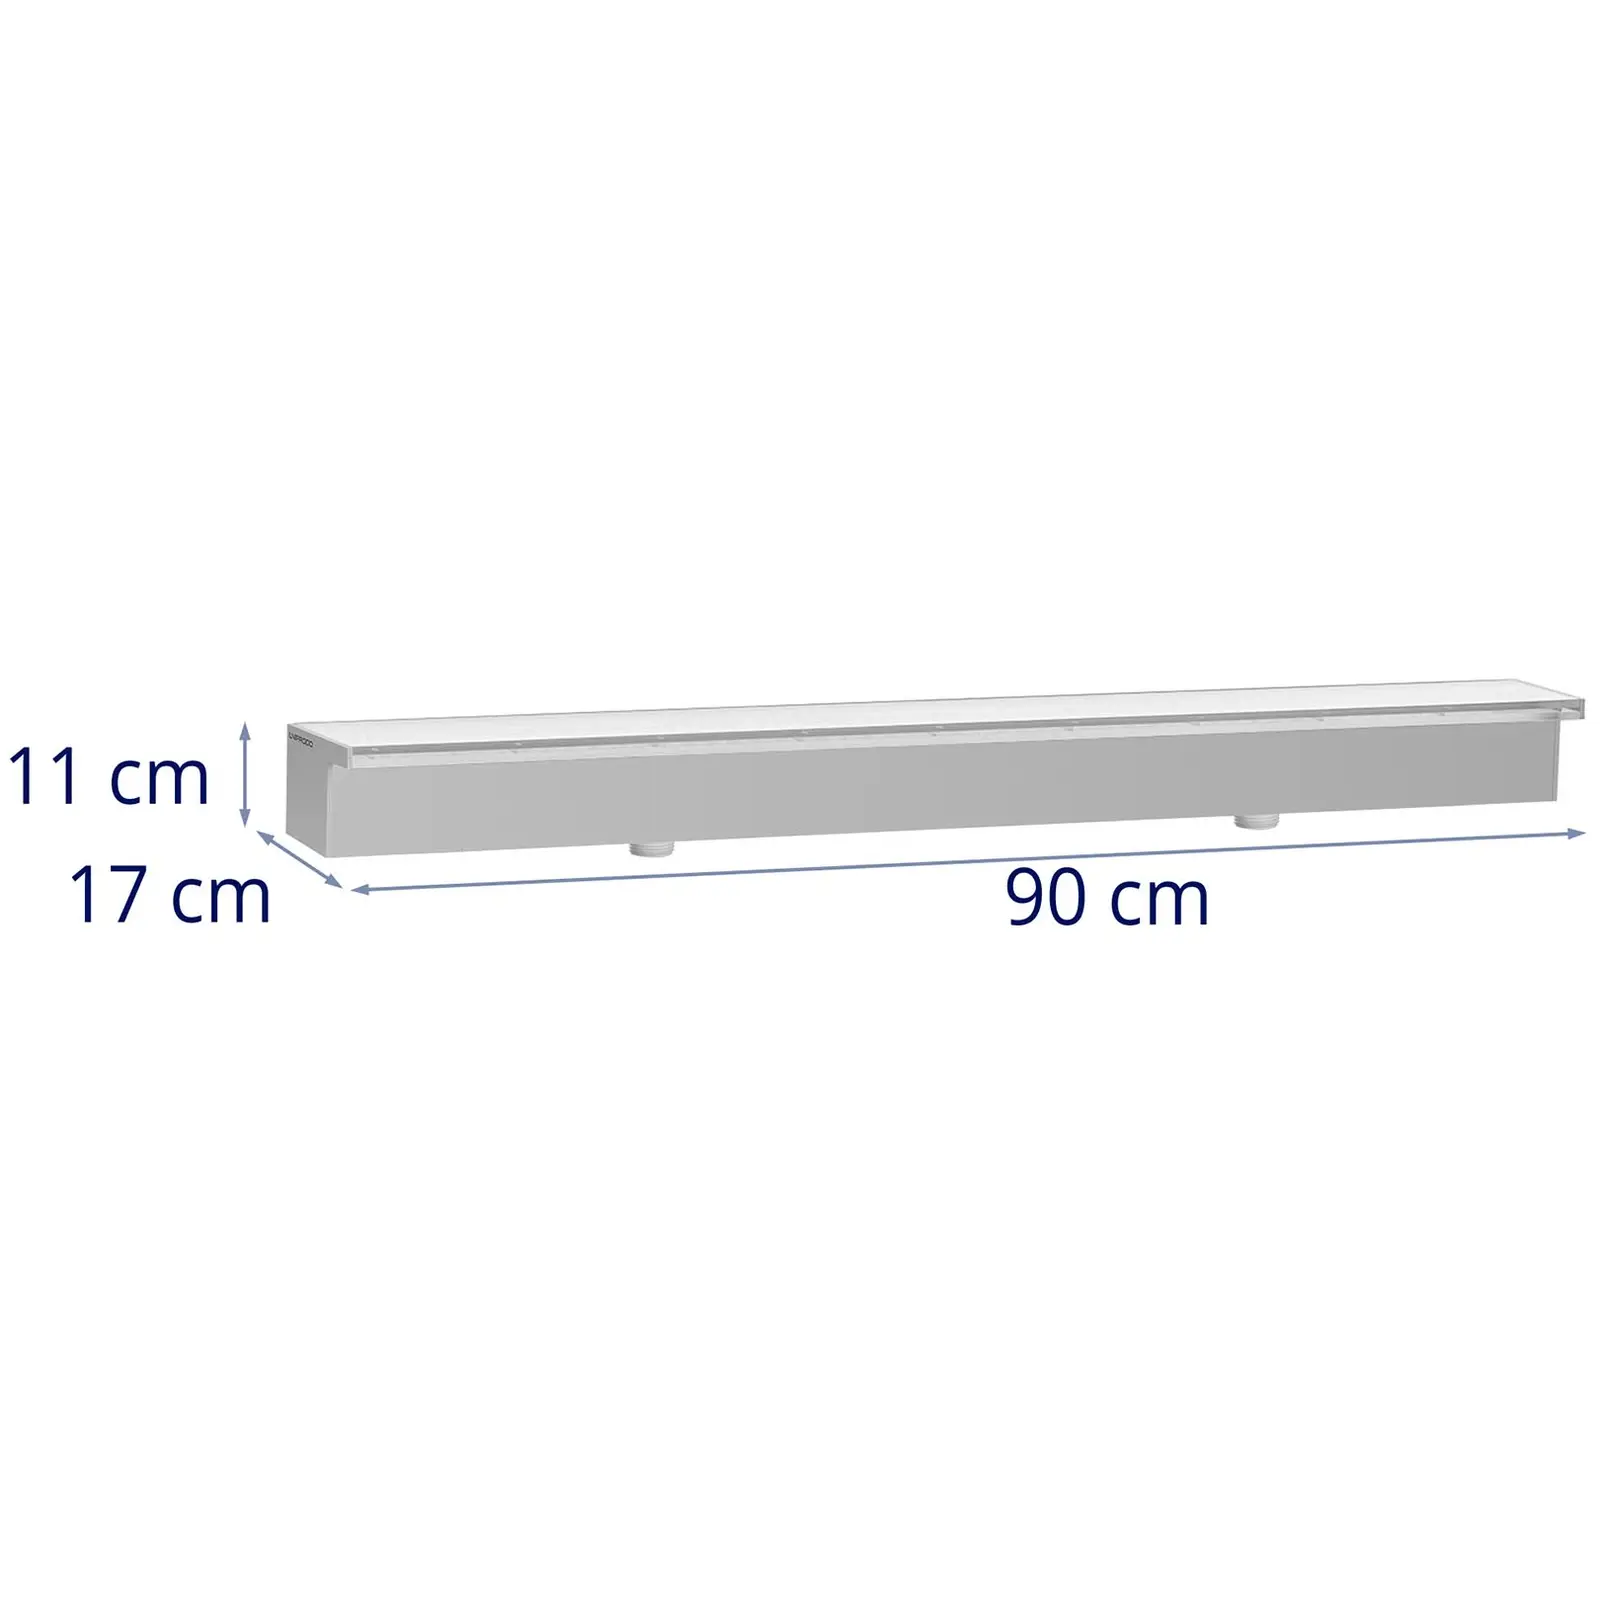 Schwalldusche - 90 cm - LED-Beleuchtung - Blau / Weiß - 30 mm Wasserauslauf